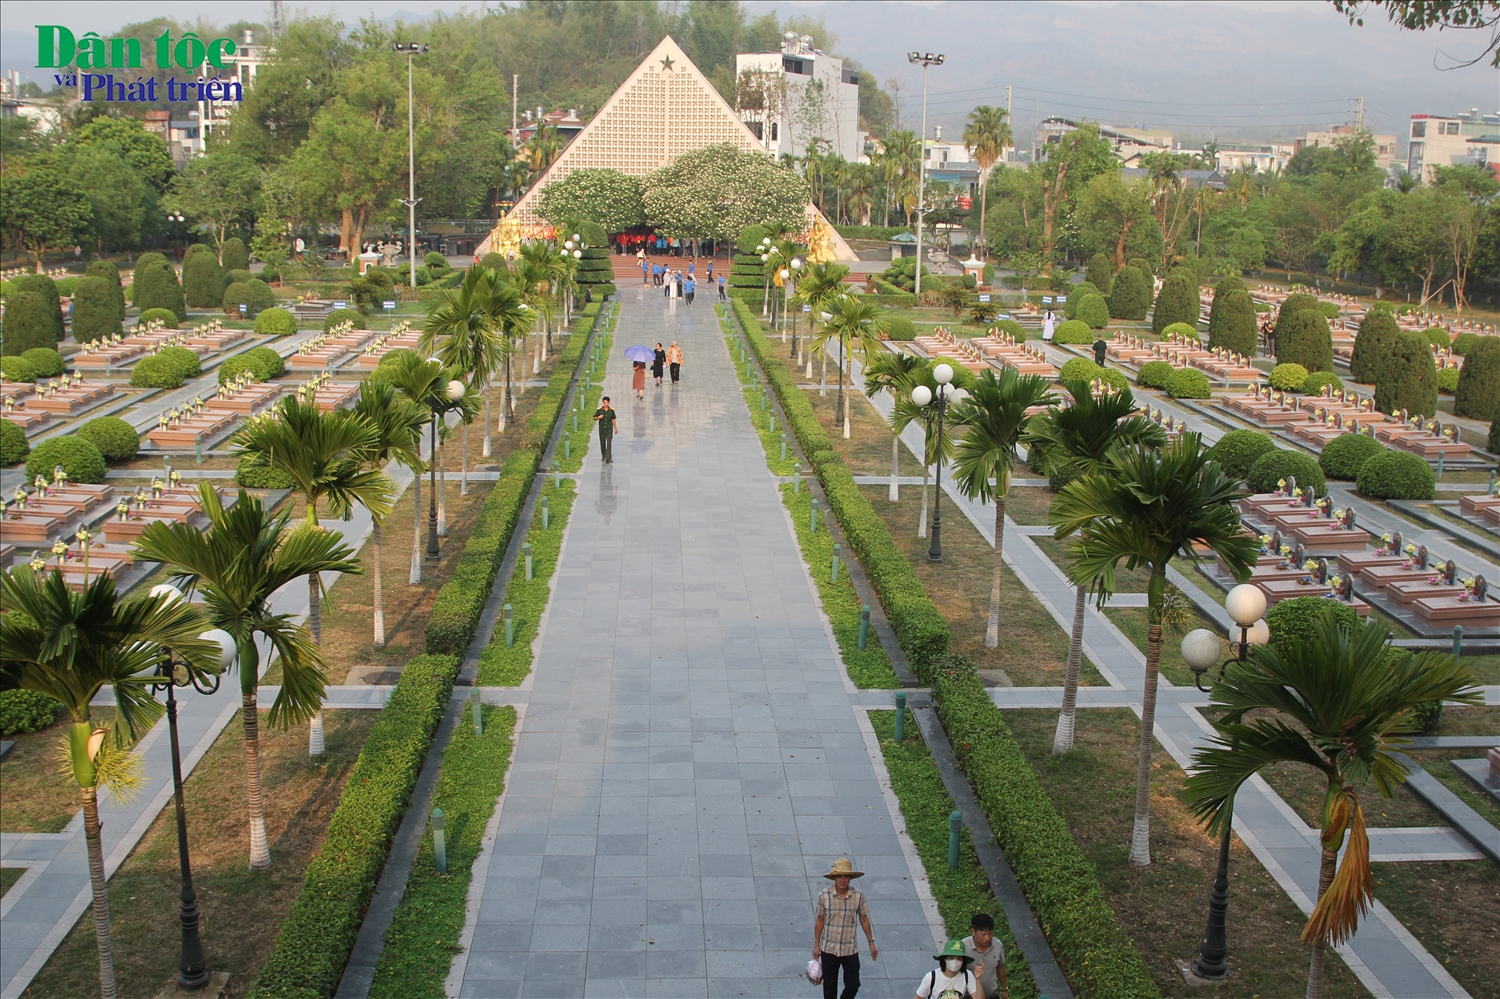 Nghĩa trang liệt sĩ A1 là nghĩa trang cấp quốc gia của tỉnh Điện Biên, nằm bên chân Đồi A1, được xây dựng năm 1958. Đây là nơi an nghỉ của 644 anh hùng liệt sĩ hy sinh trong Chiến dịch Điện Biên Phủ, phần lớn các phần mộ liệt sĩ đều chưa xác định được tên tuổi.